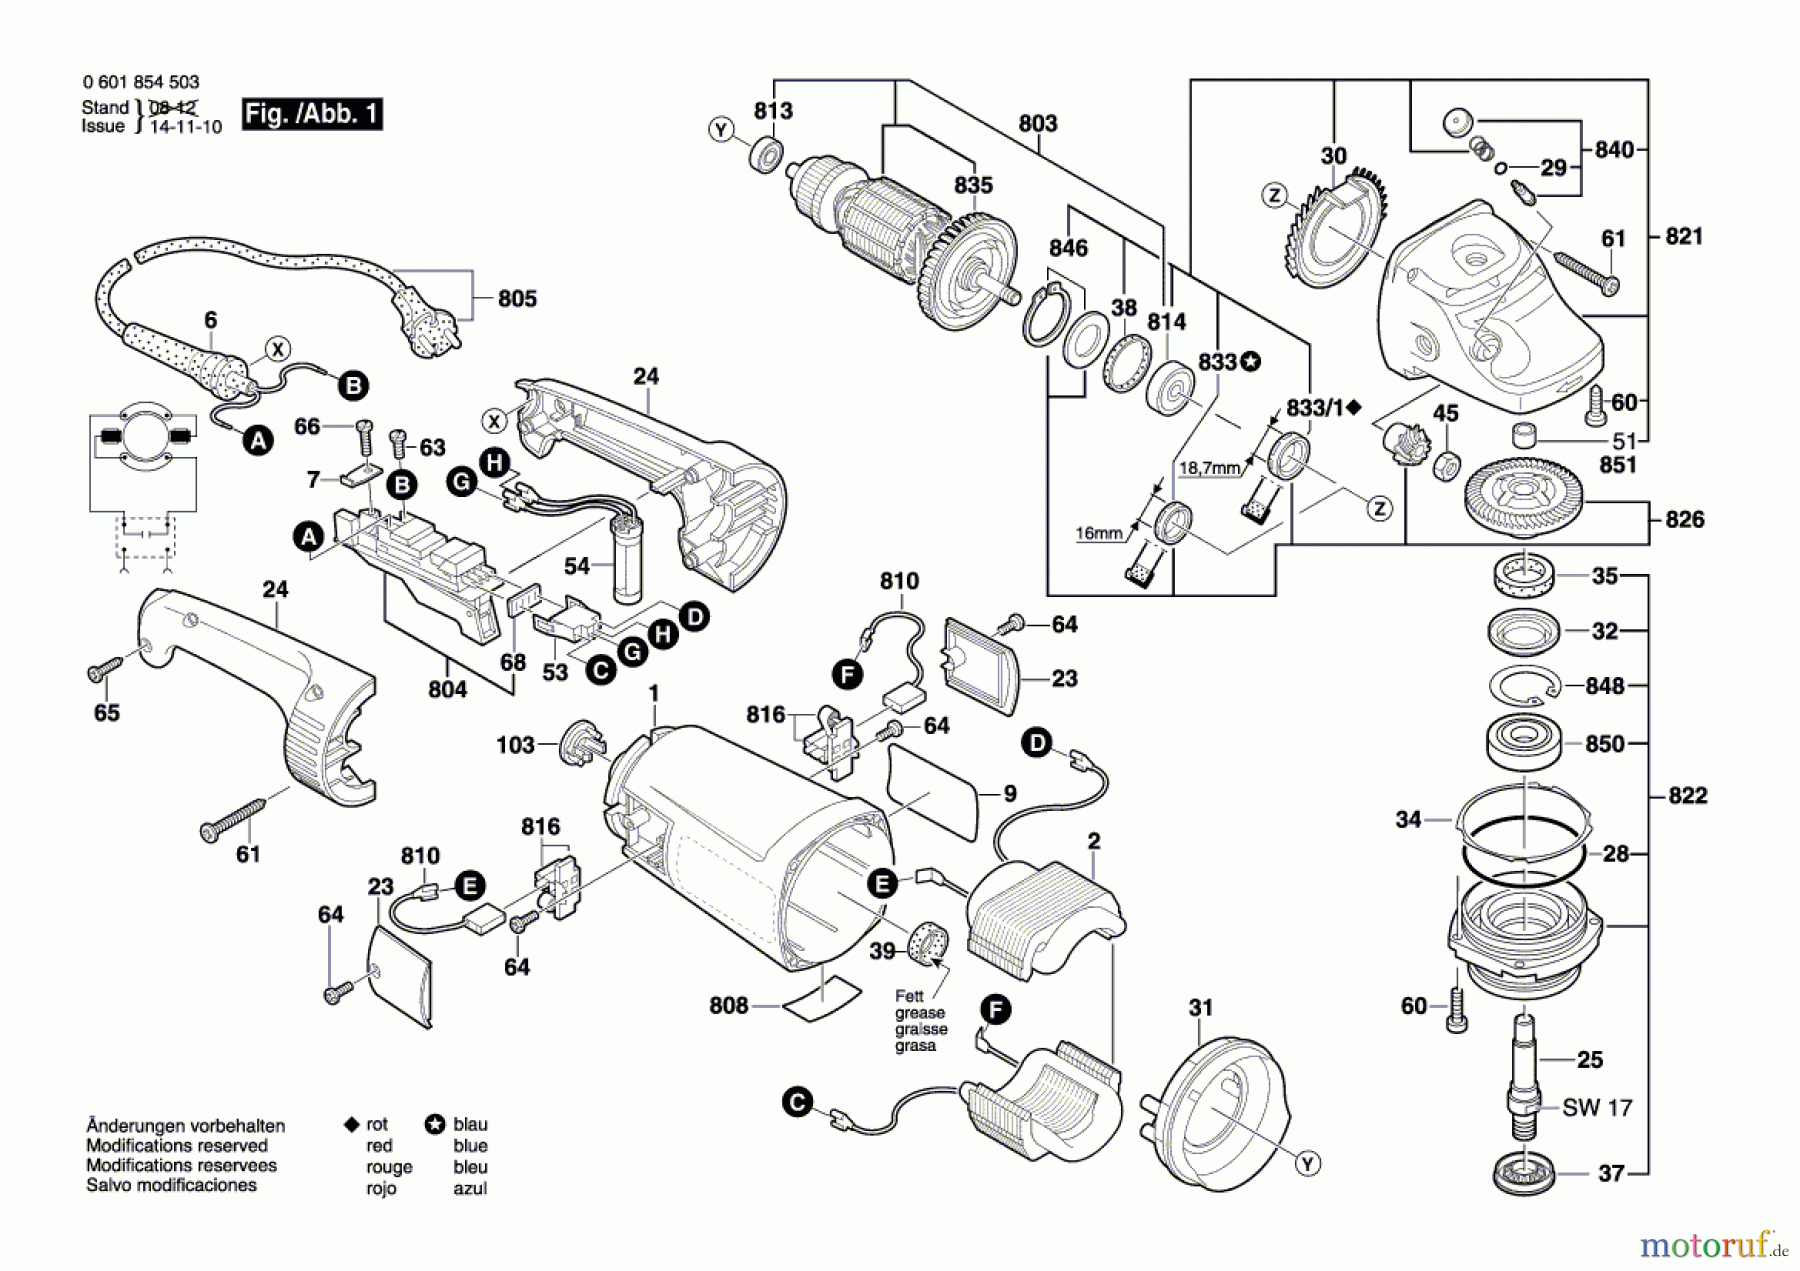  Bosch Werkzeug Winkelschleifer GWS 24-230 JH Seite 1